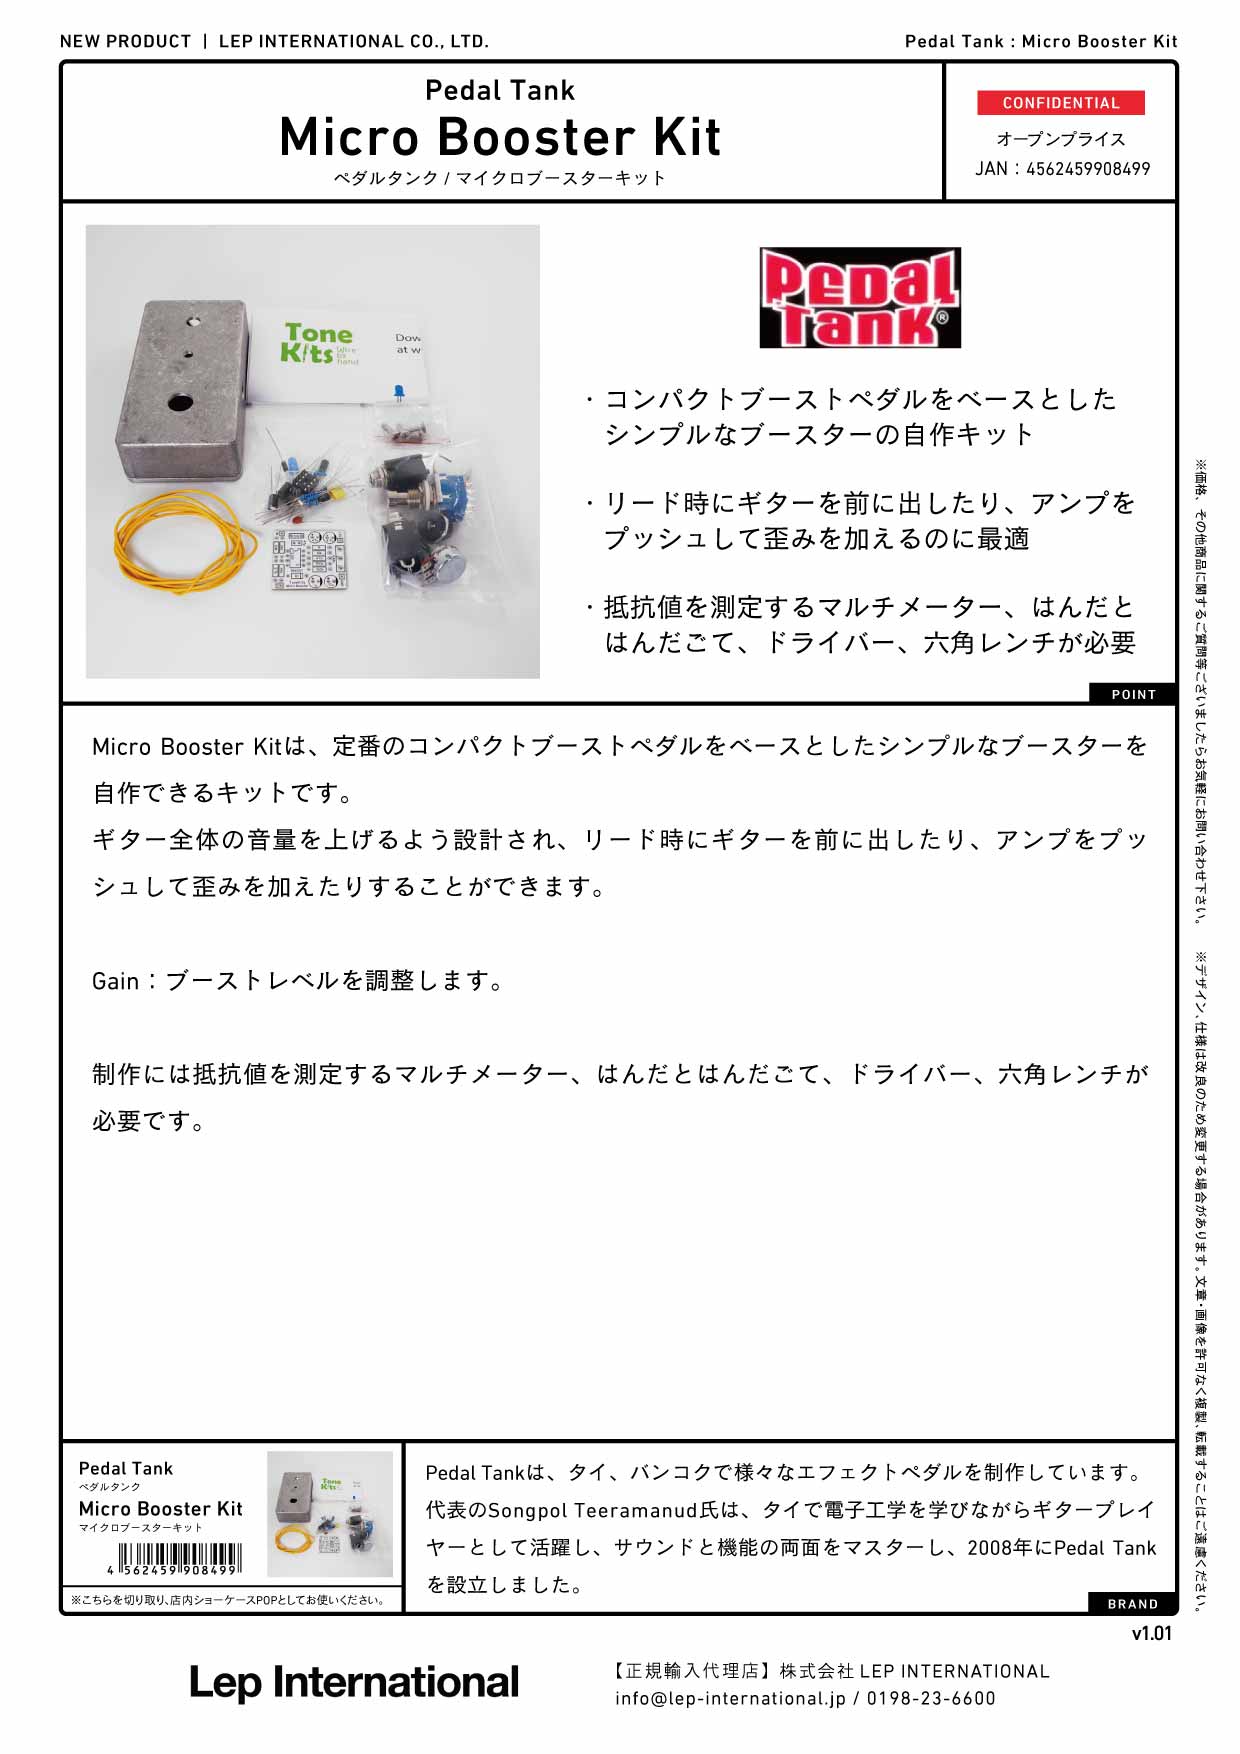 Pedal Tank / Micro Booster Kit